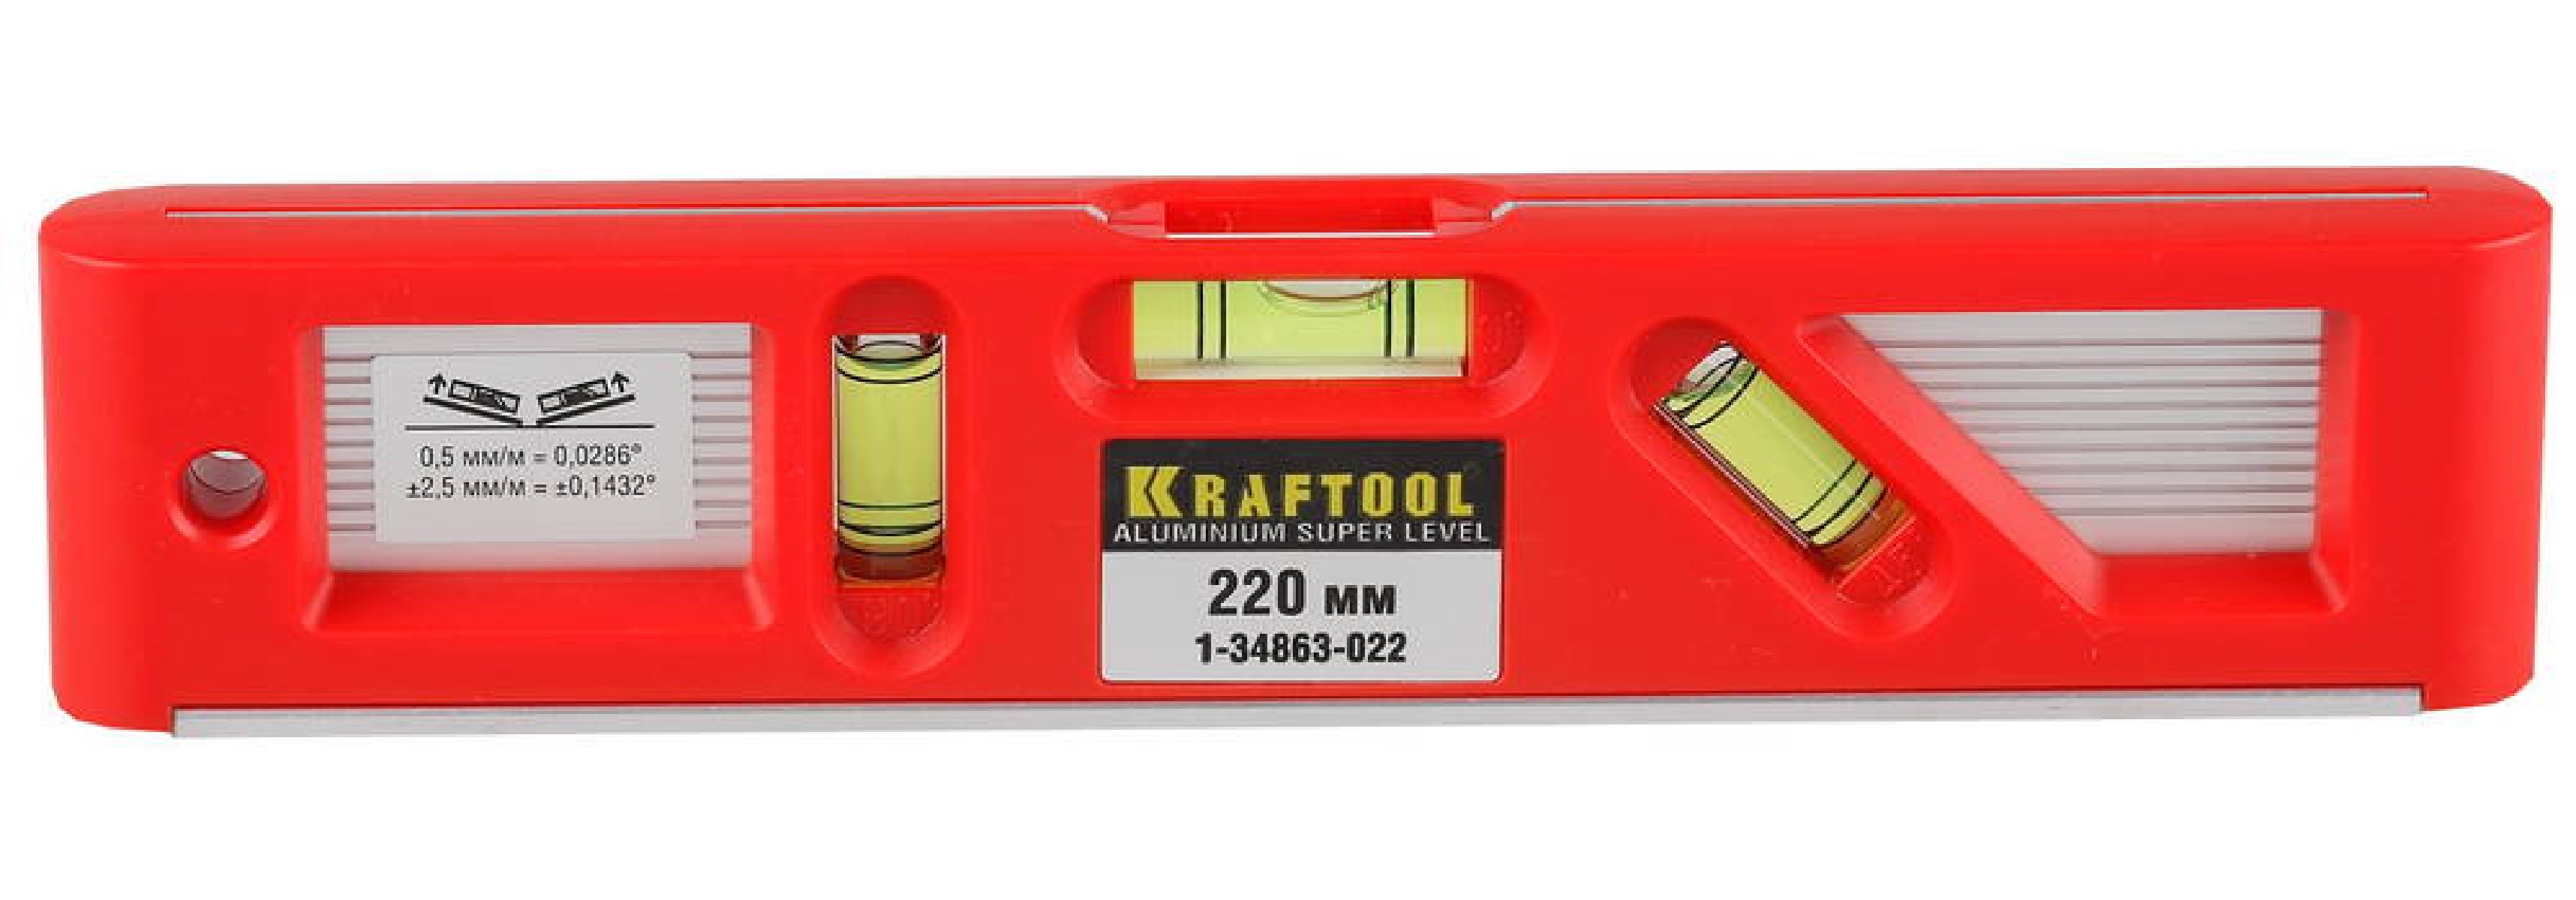 Kraftool Director 220 ,   ,  0.5  , (1-34863-022)